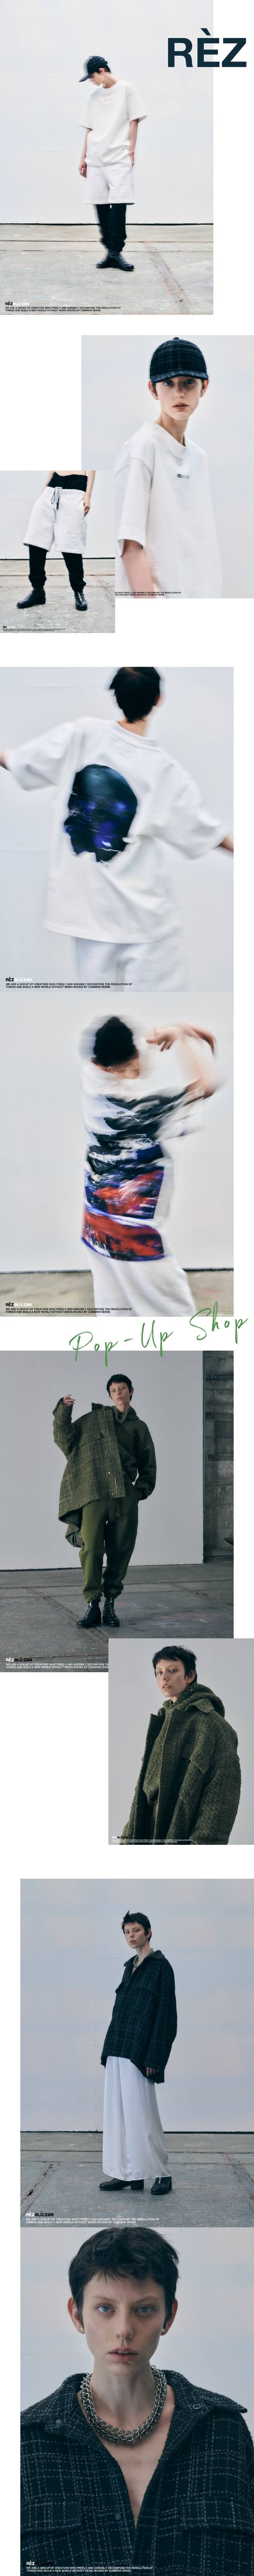 REZ POP-UP SHOP